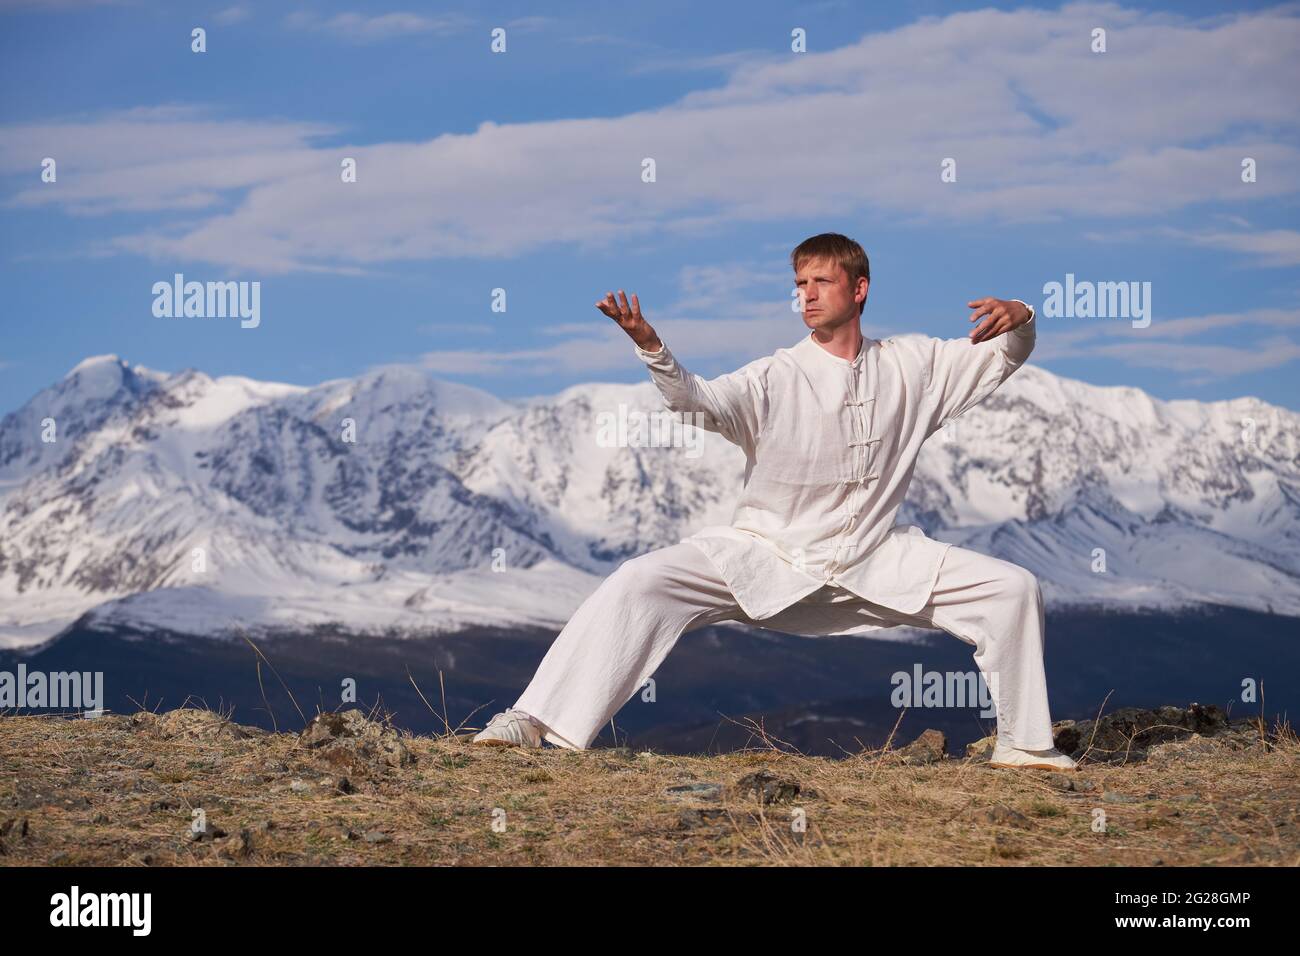 Wushu master in una formazione uniforme sportiva bianca sulla collina. Il campione di Kungfu allena le arti maritiche nella natura sullo sfondo delle montagne innevate. Foto Stock